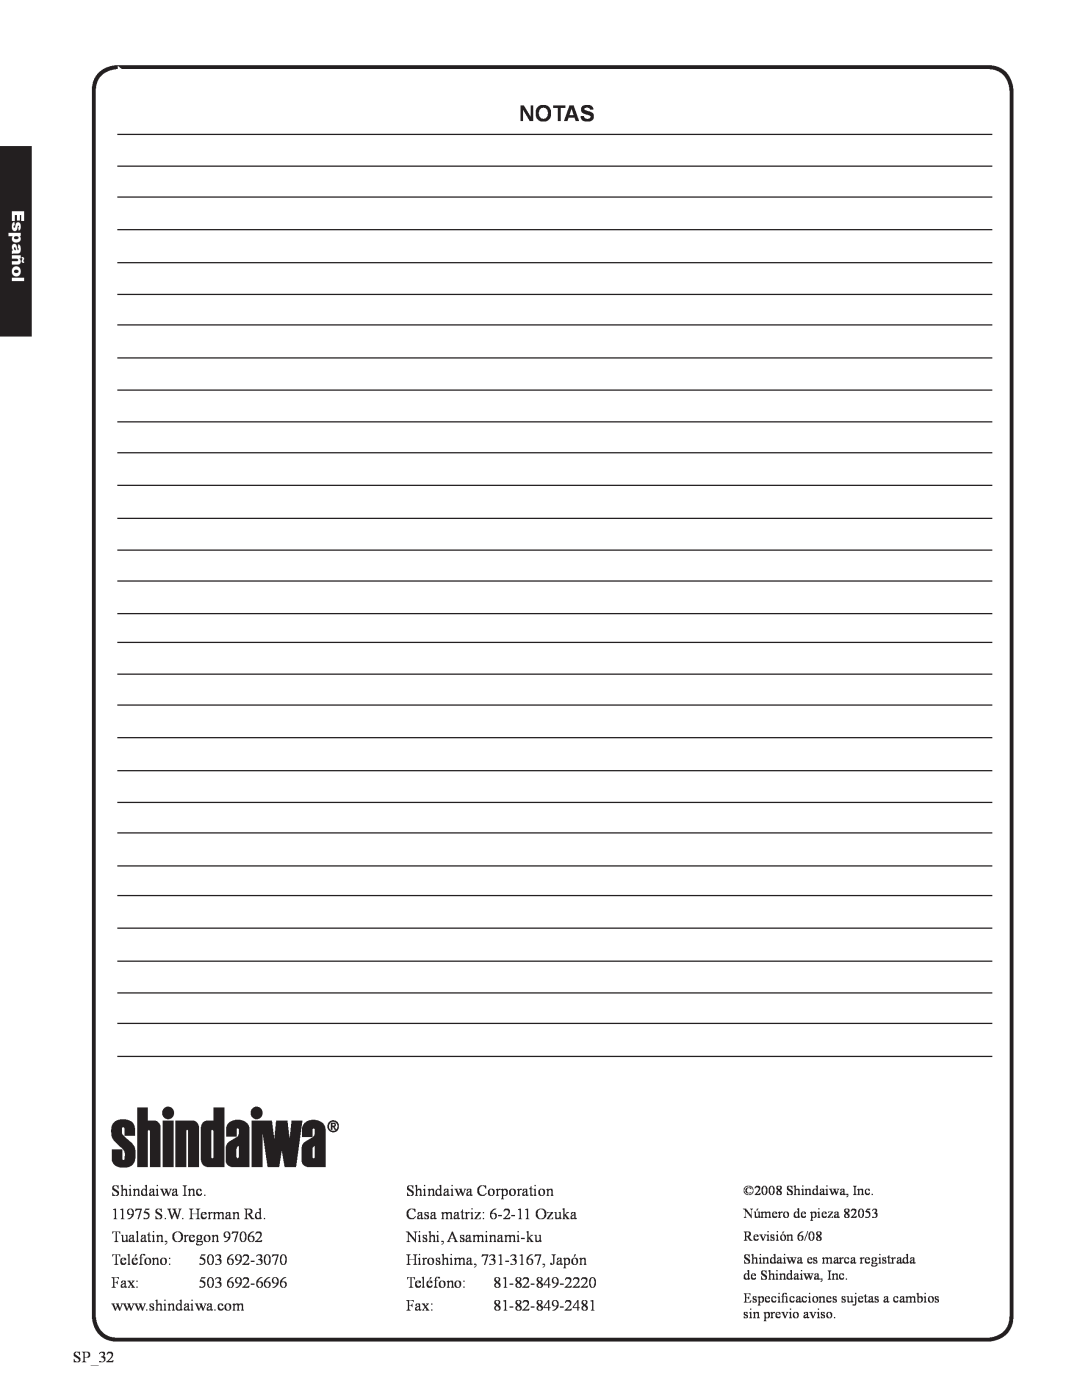 Shindaiwa DH212, 82053 manual notas, Español, Shindaiwa Inc 